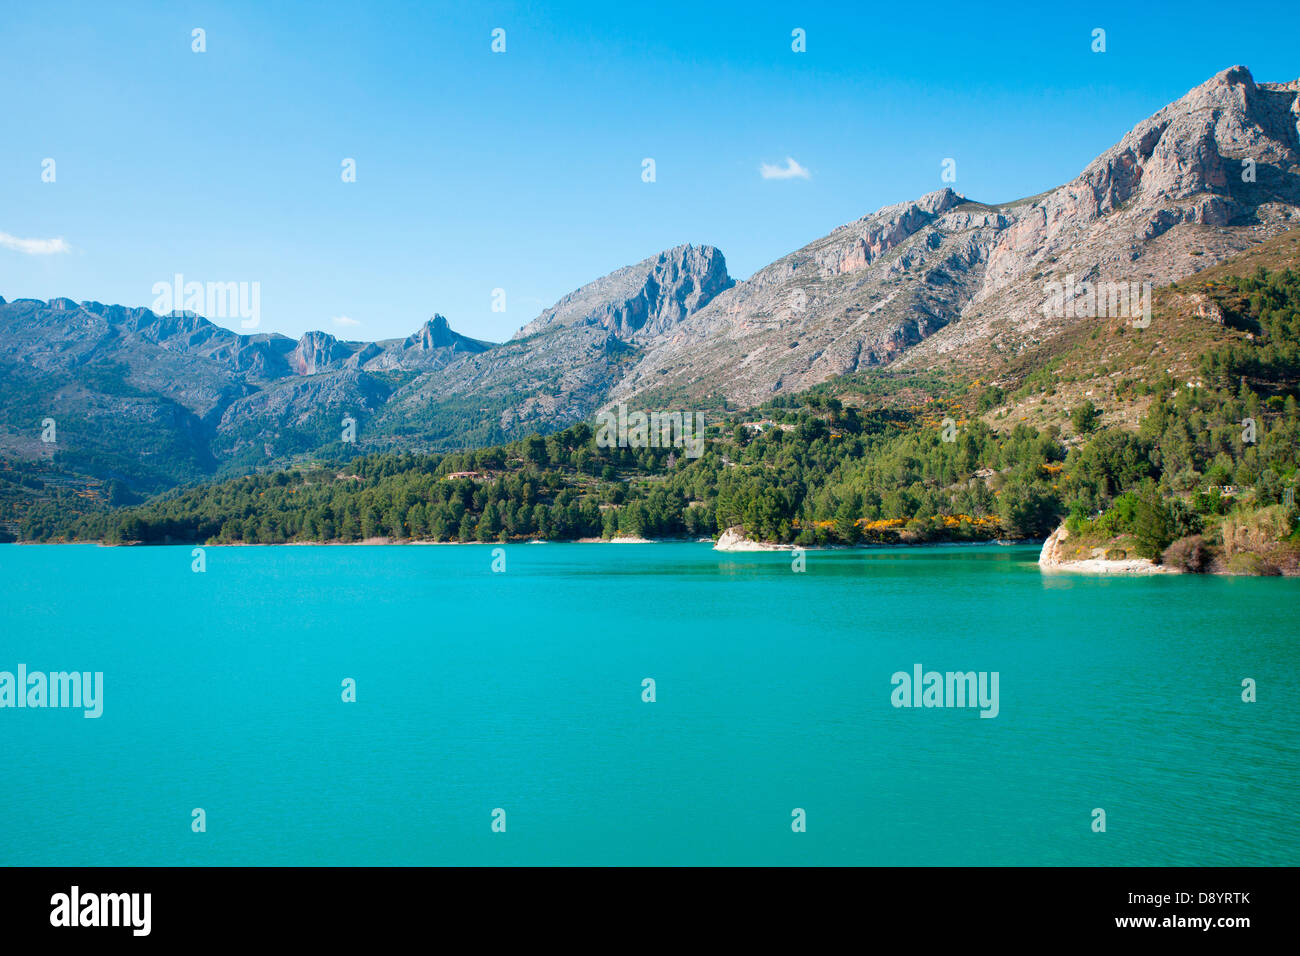 Uno de los lagos más bellos del sur de España - Lago Guadalest Foto de stock